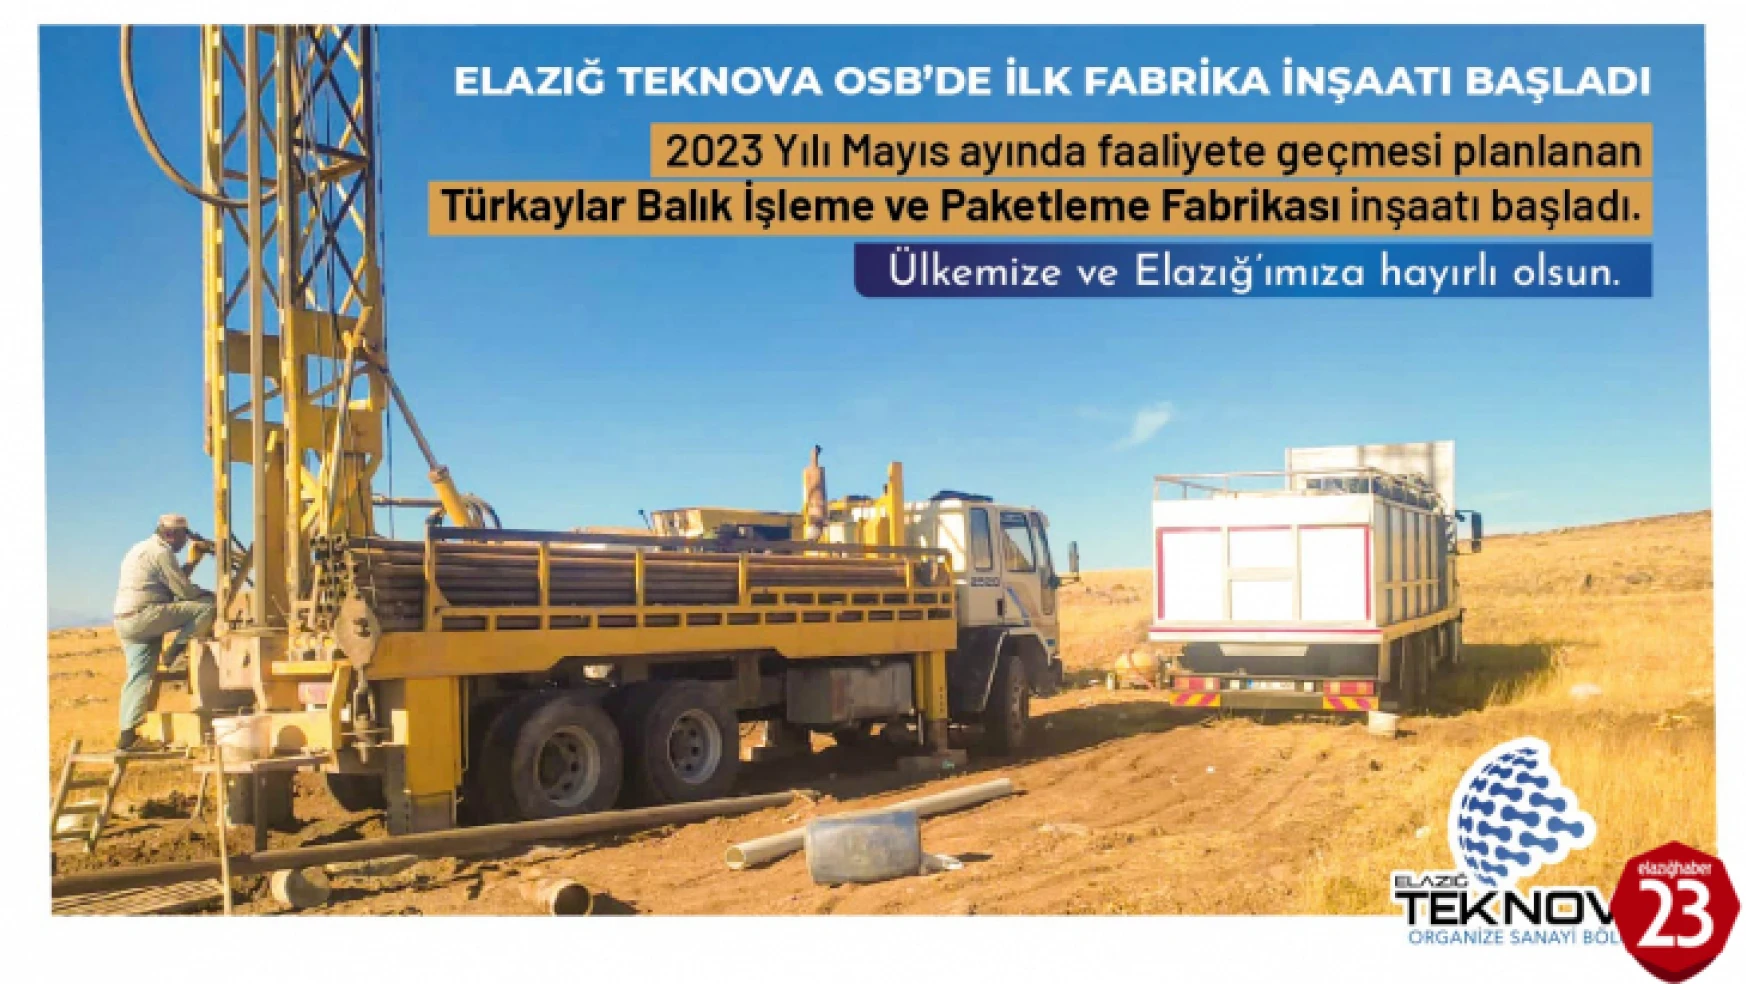 Elazığ'da Yeni Kurulan Teknova OSB'de İlk Yatırım İçin Kazma Vuruluyor!